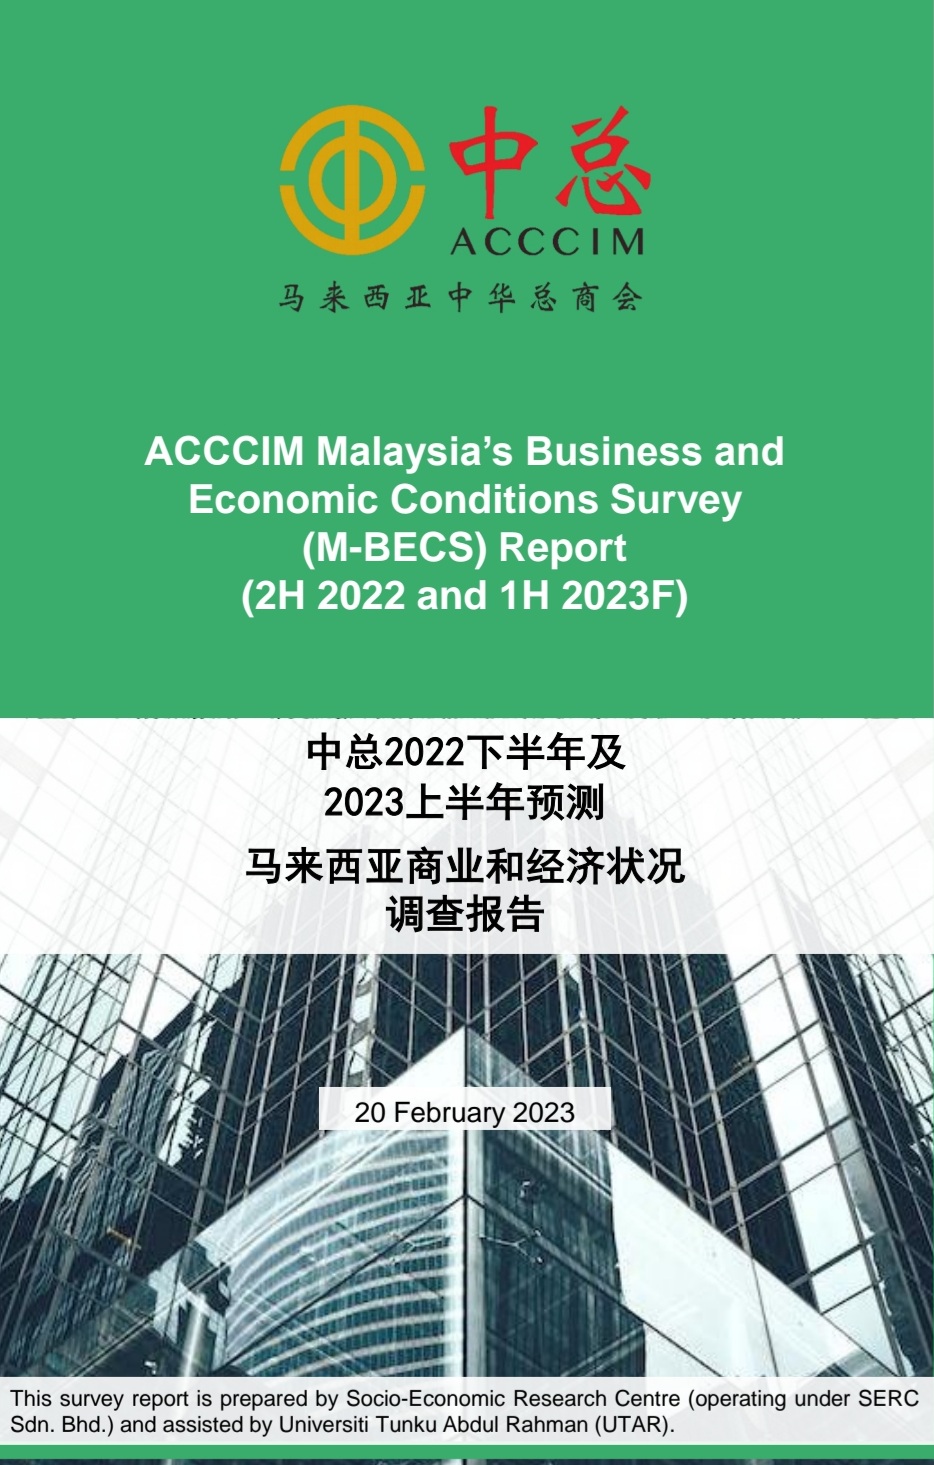 中总2022下半年及2023上半年预测马来西亚商业和经济状况调查报告” 